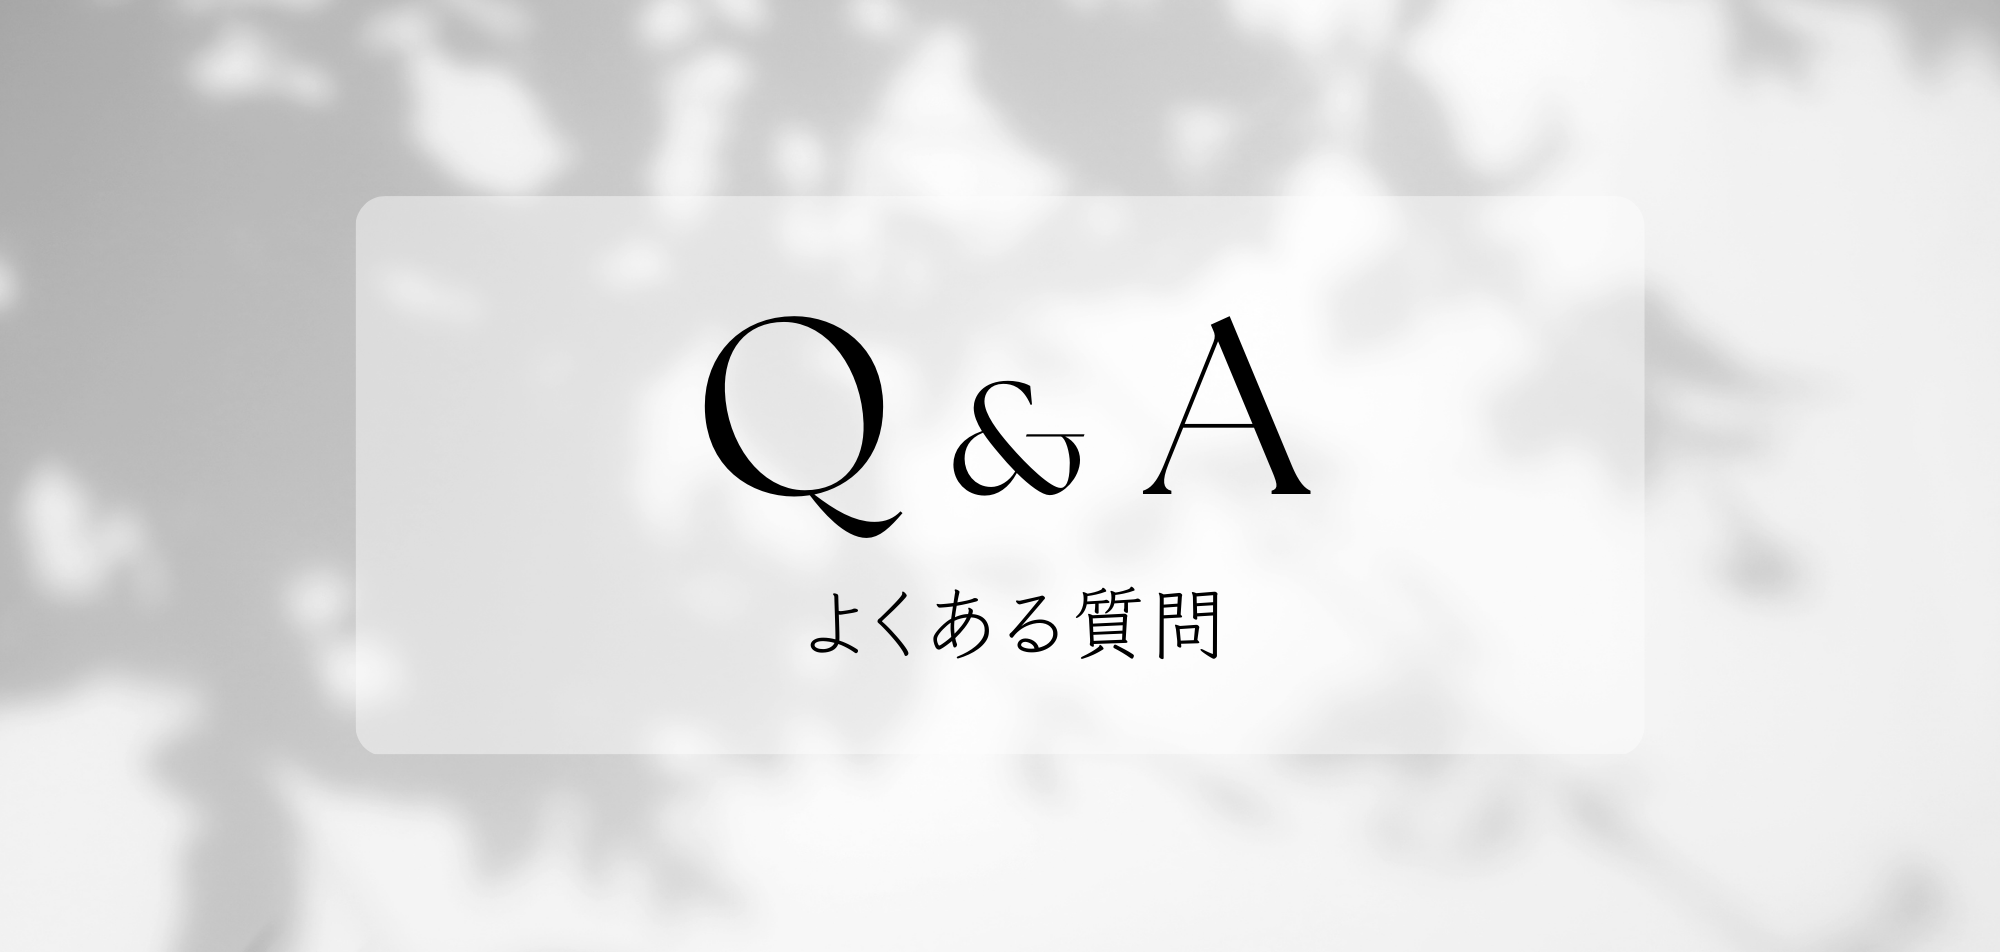 【Q&A】よくある質問